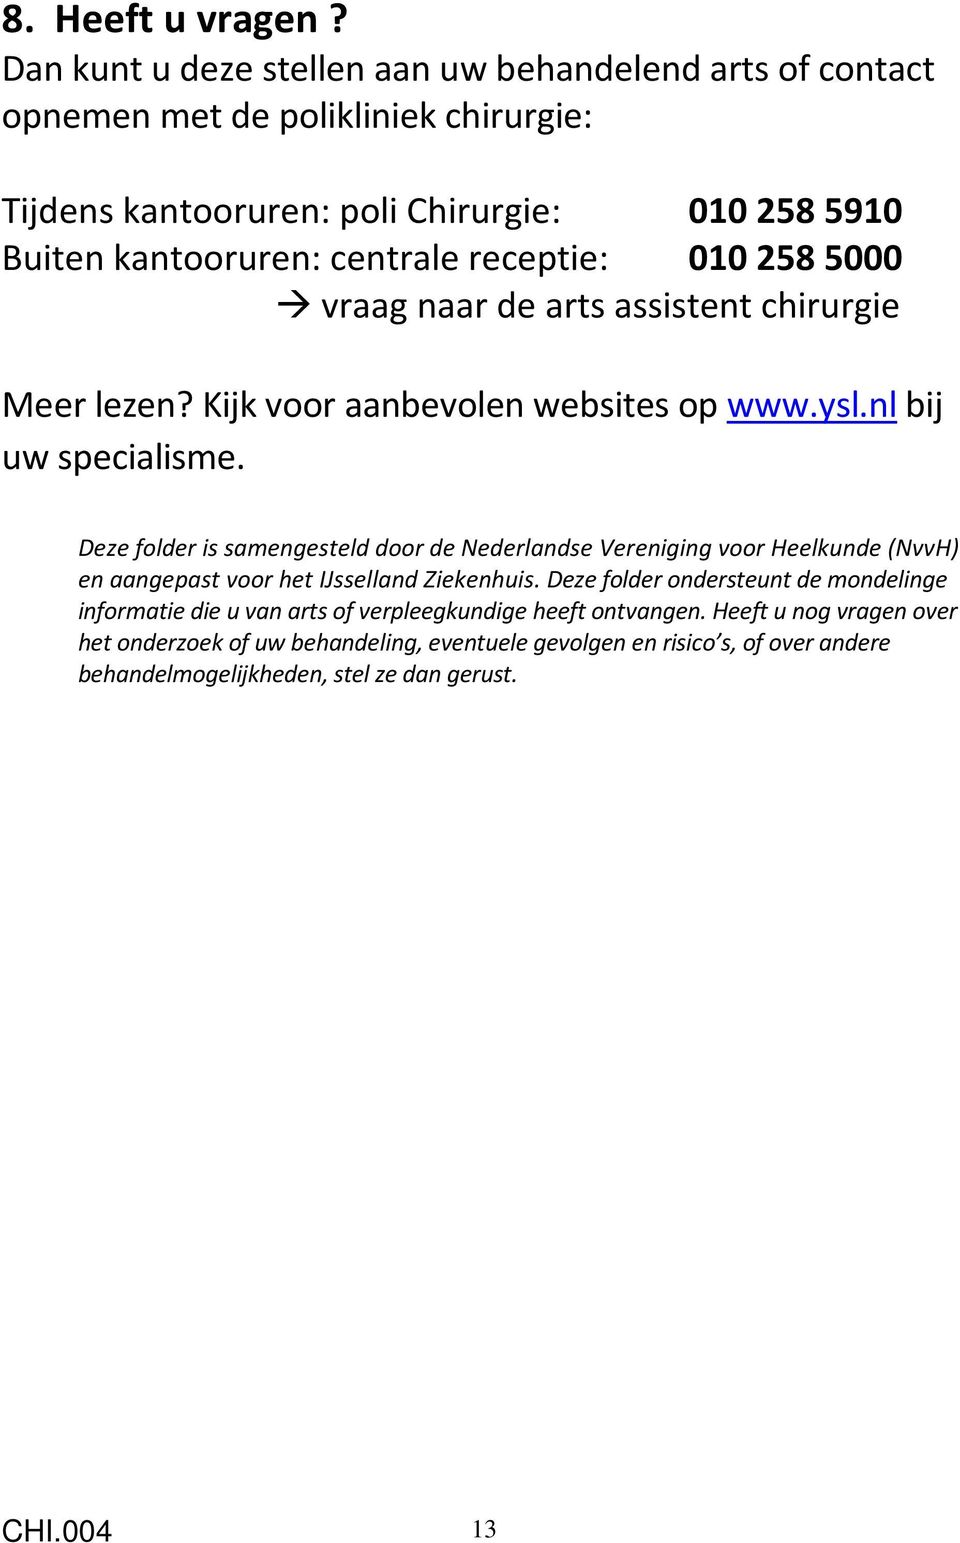 receptie: 0102585000 vraag naar de arts assistent chirurgie Meer lezen? Kijk voor aanbevolen websites op www.ysl.nl bij uw specialisme.